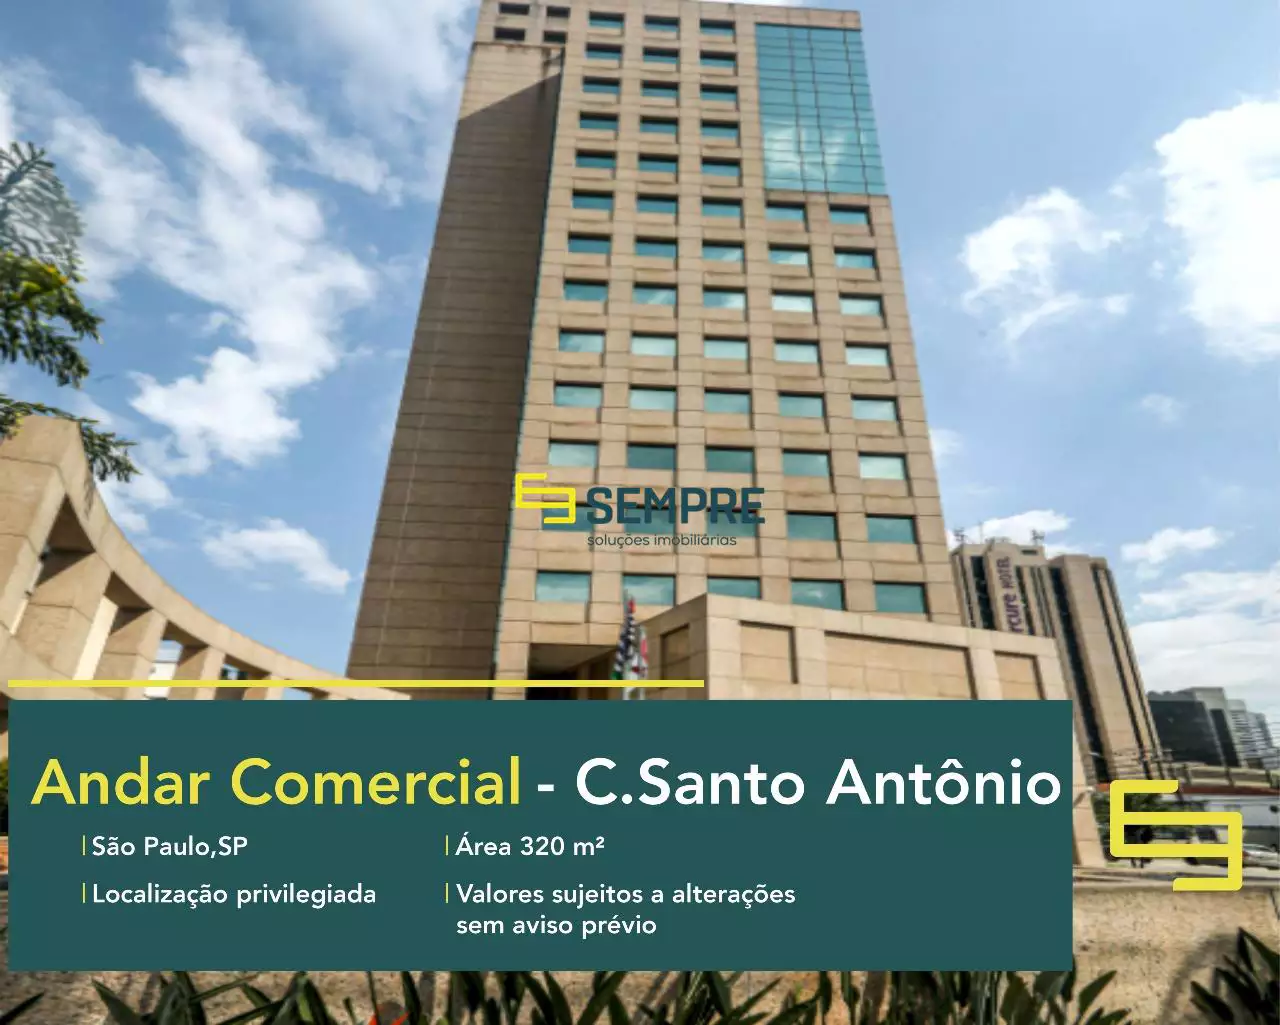 Andar corporativo no Chácara Santo Antônio em São Paulo, em excelente localização. O ponto comercial conta com área de 320 m².